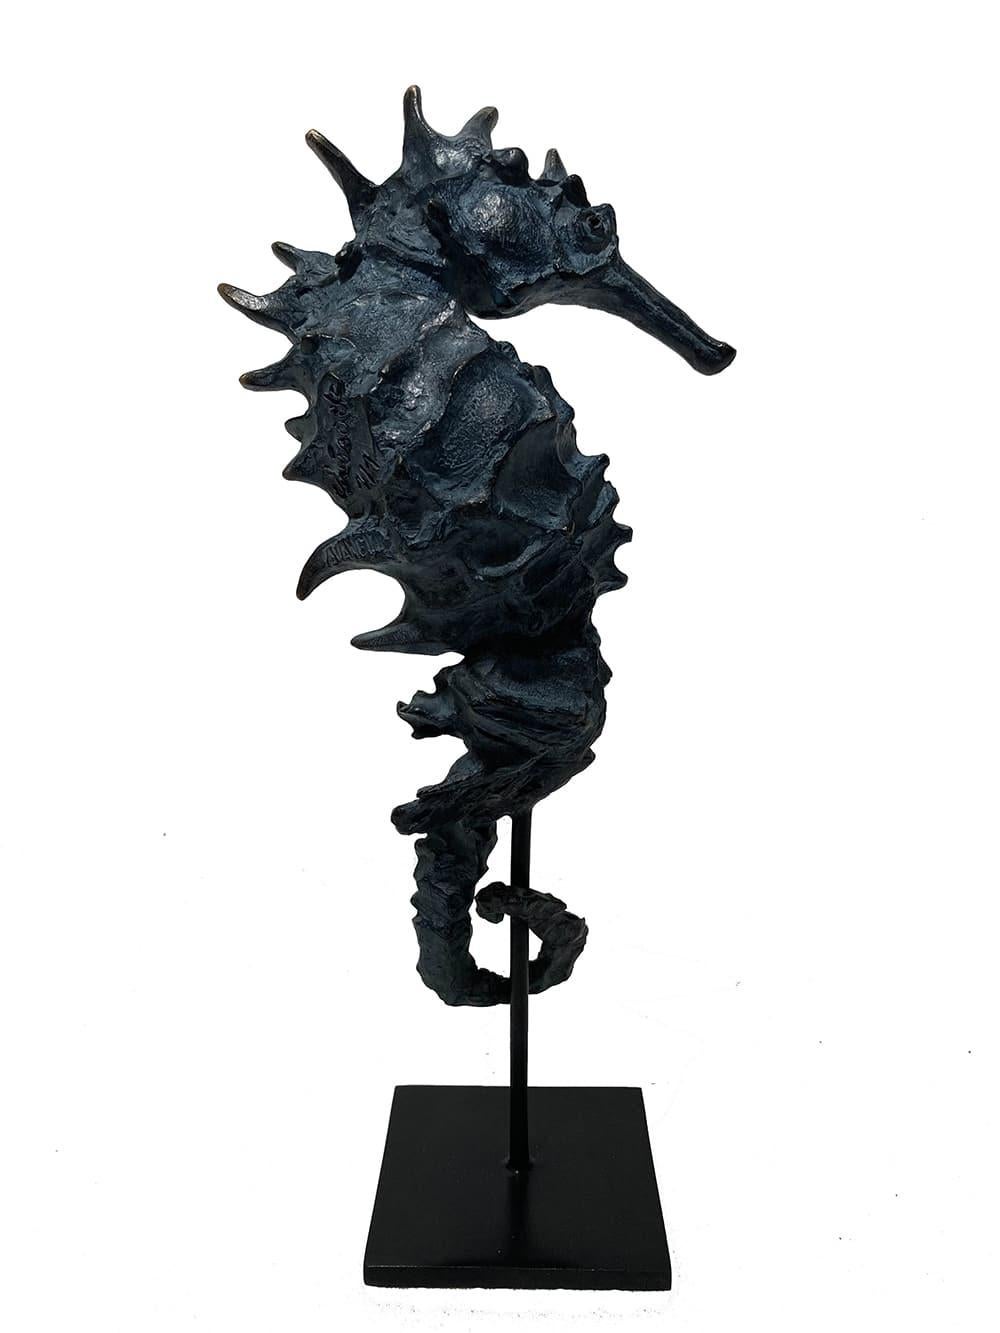 L'hippocampe outremer II est une sculpture en bronze unique de l'artiste contemporain Chésade. Ses dimensions sont de 25 × 10,5 × 6 cm (9,8 × 4,1 × 2,4 in). 
La sculpture est signée et est accompagnée d'un socle en métal et d'un certificat